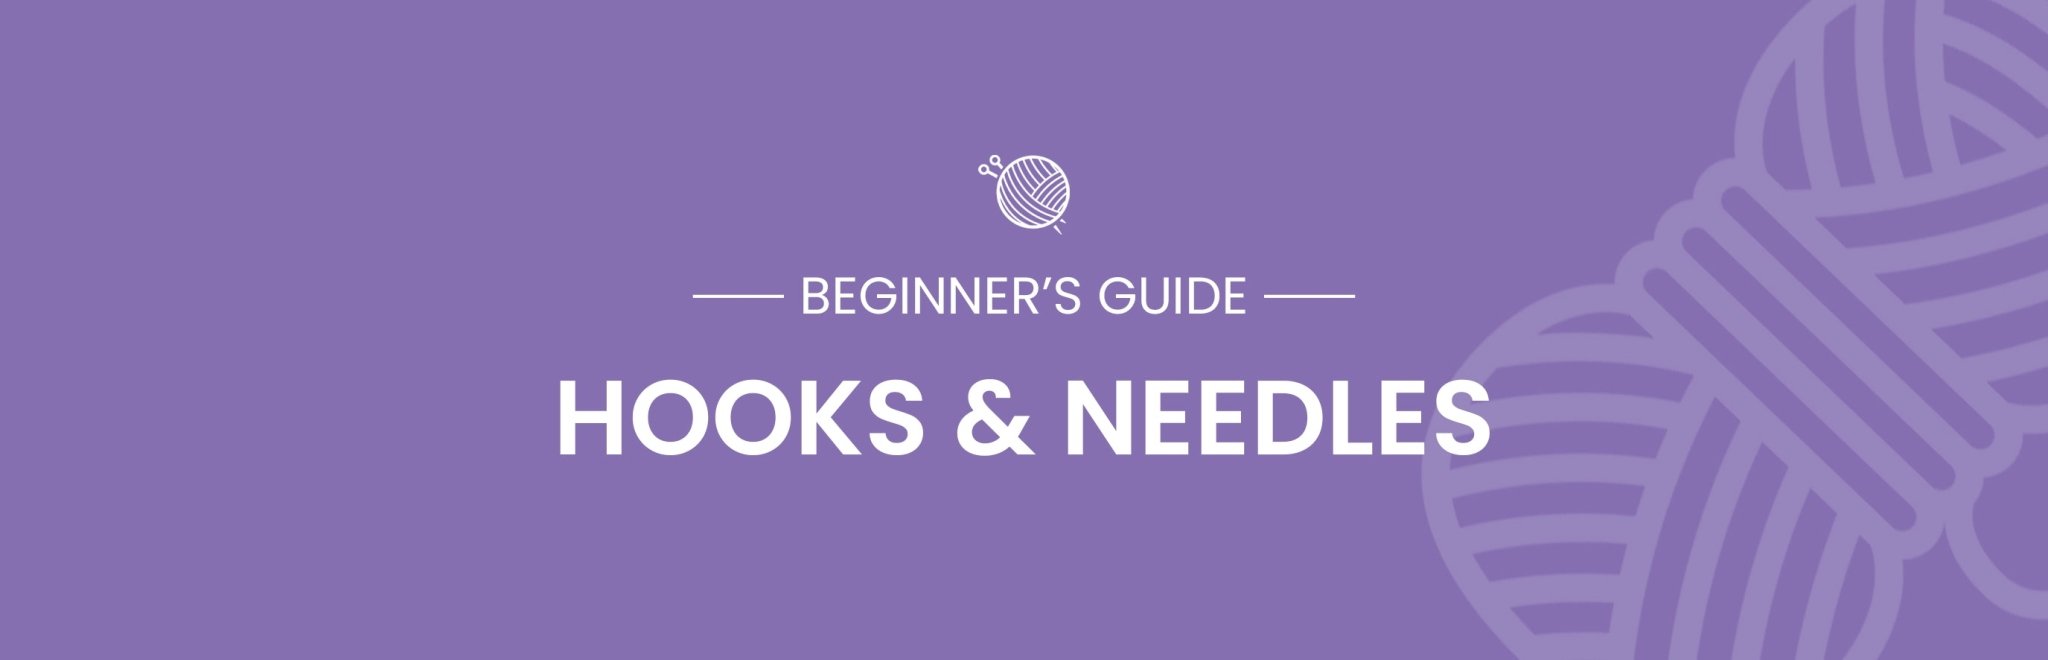 A Beginner's Guide to Crochet Hooks & Knitting Needles